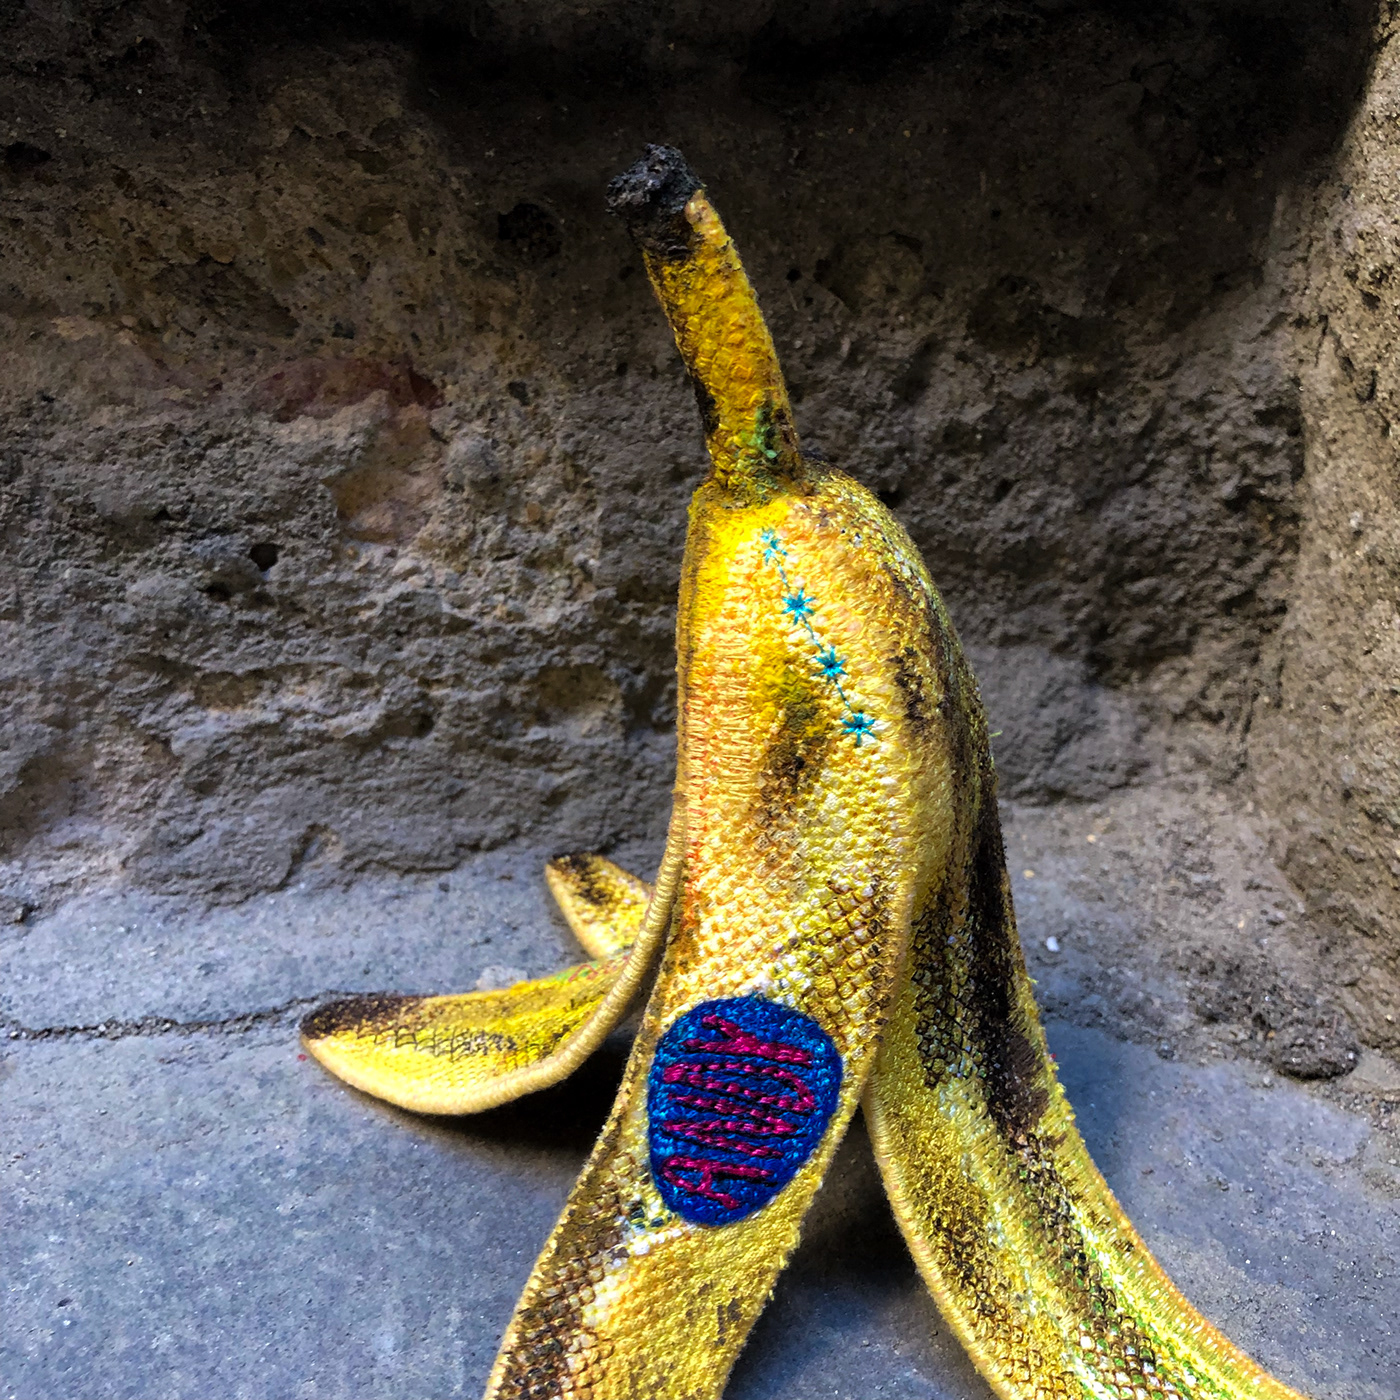 Andy Warhol art quilt banana Embroidery felt fibre art modern popart sculpture textile art